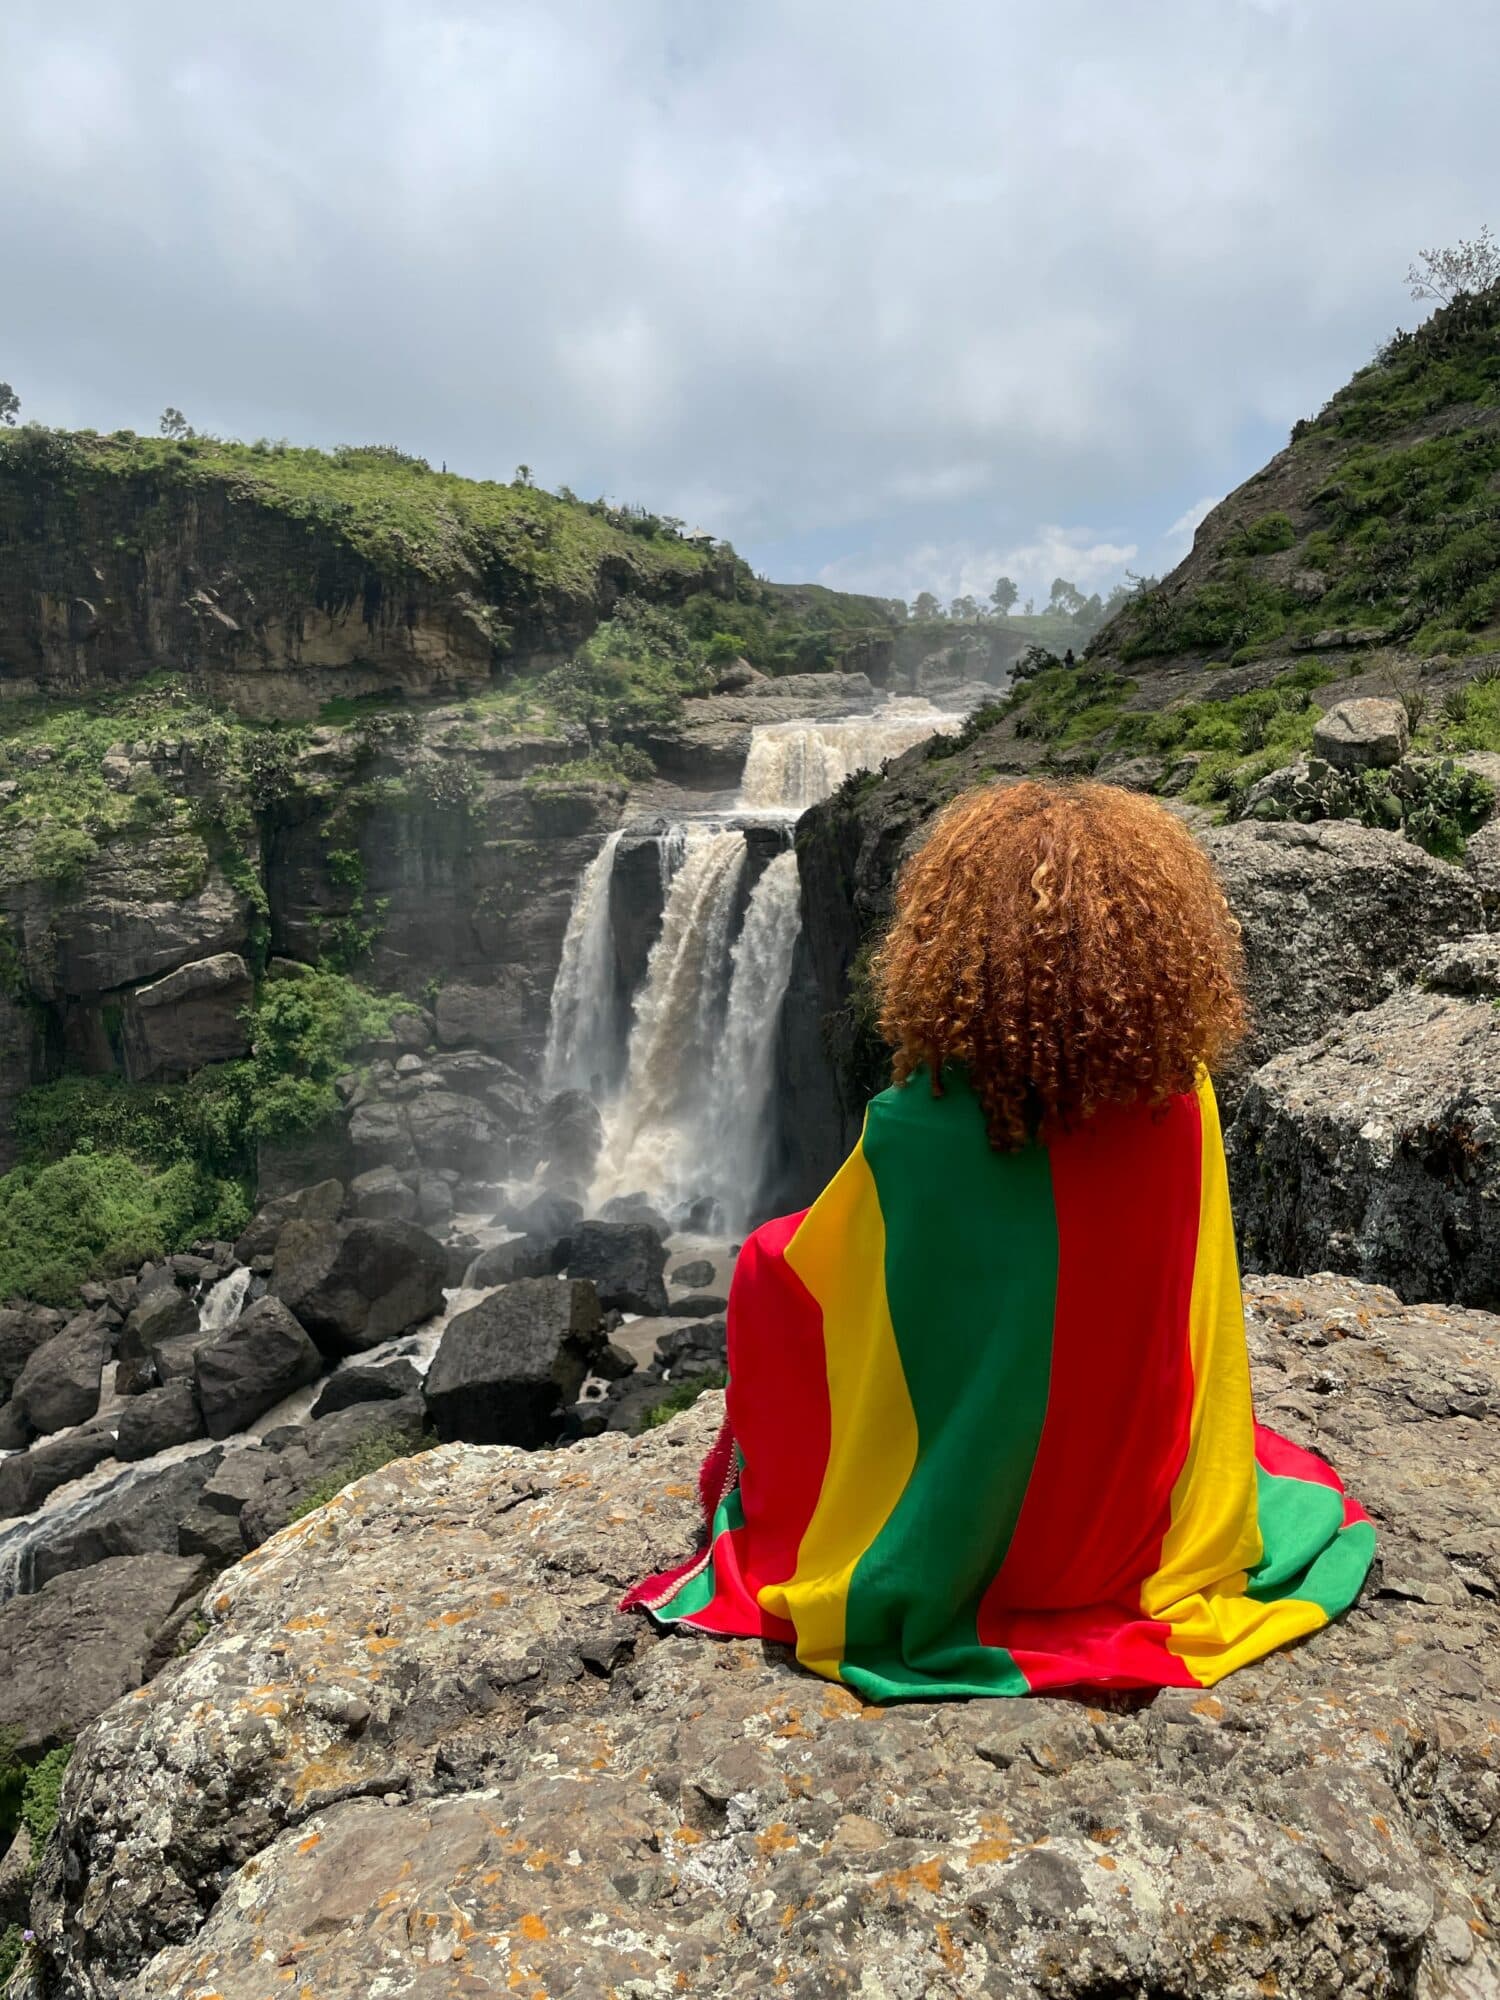 uma mulher de costas embrulhada em uma bandeira com as cores da Etiópia, sentada em frente a uma cachoeira em um ambiente bem rochoso, mas com vegetação, abaixo há o Mosteiro de Debre Libanos, para ilustrar o post de chip celular Etiópia